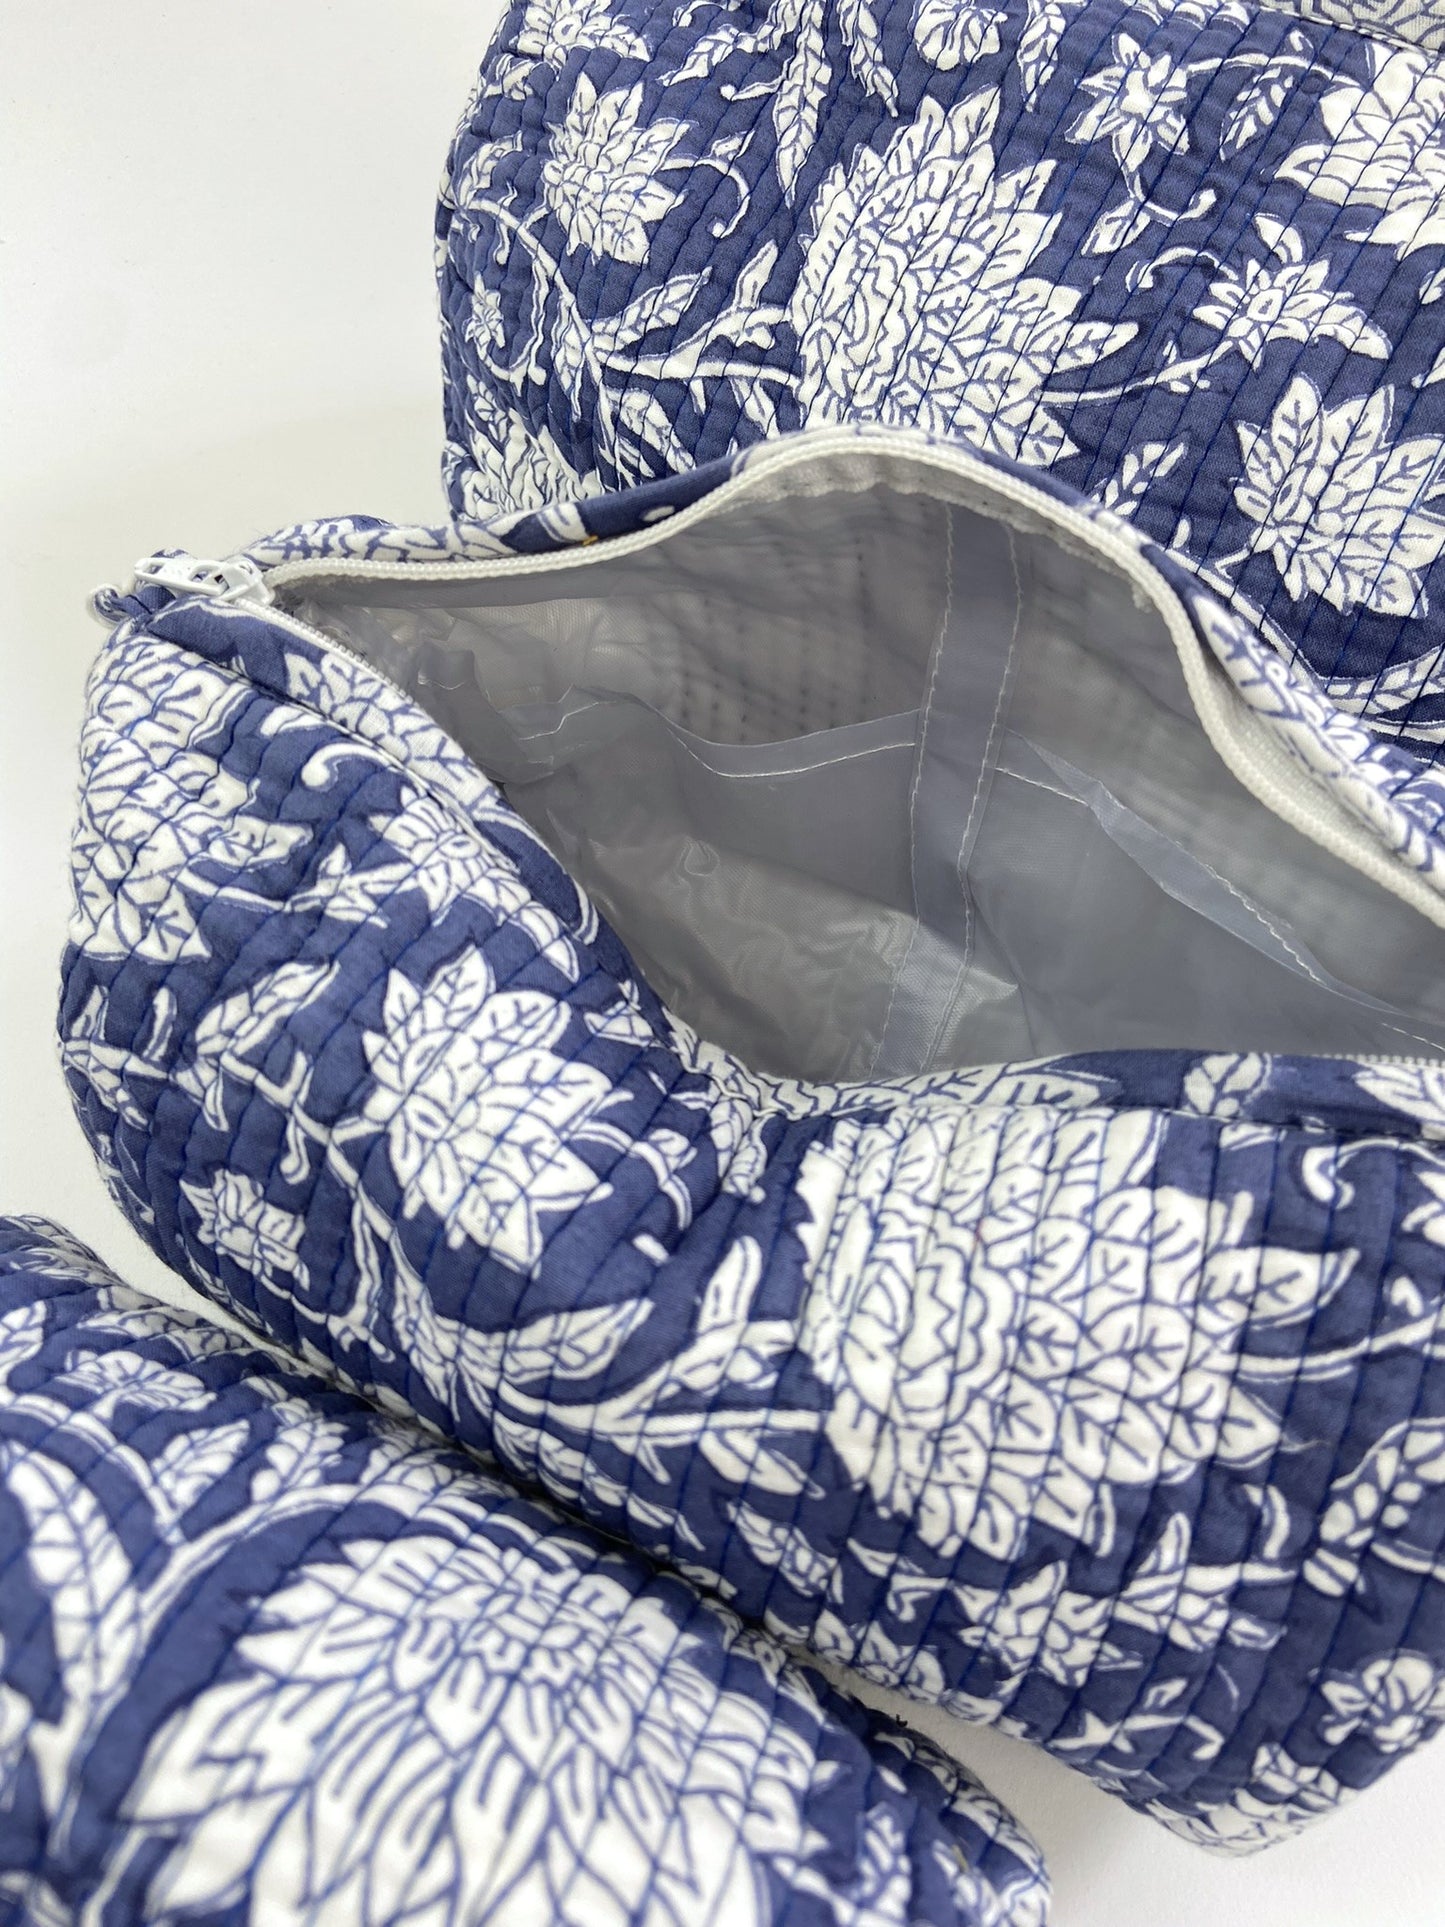 Trousse de toilette block print motifs floral Bleu